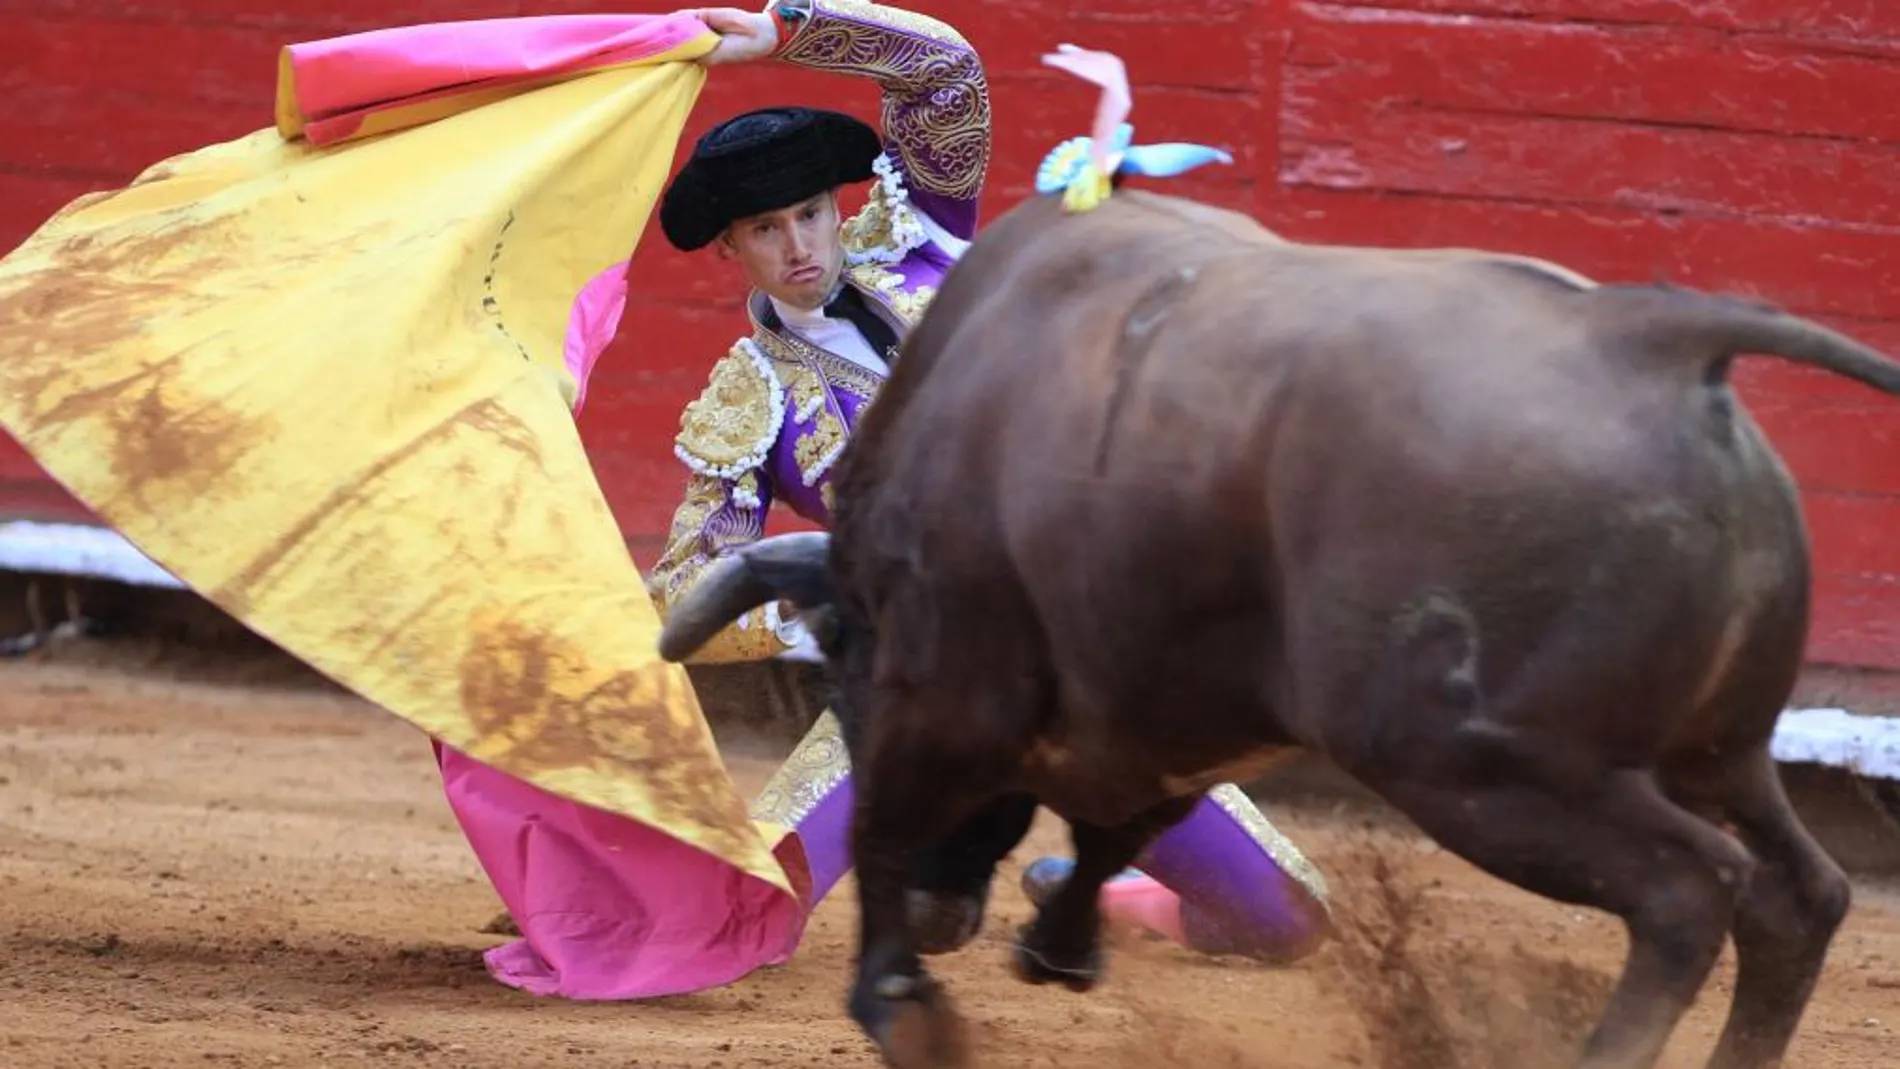 El torero mexicano Arturo Saldivar lidia su primer toro de la tarde, "Don Pato"de 490 kilogramos